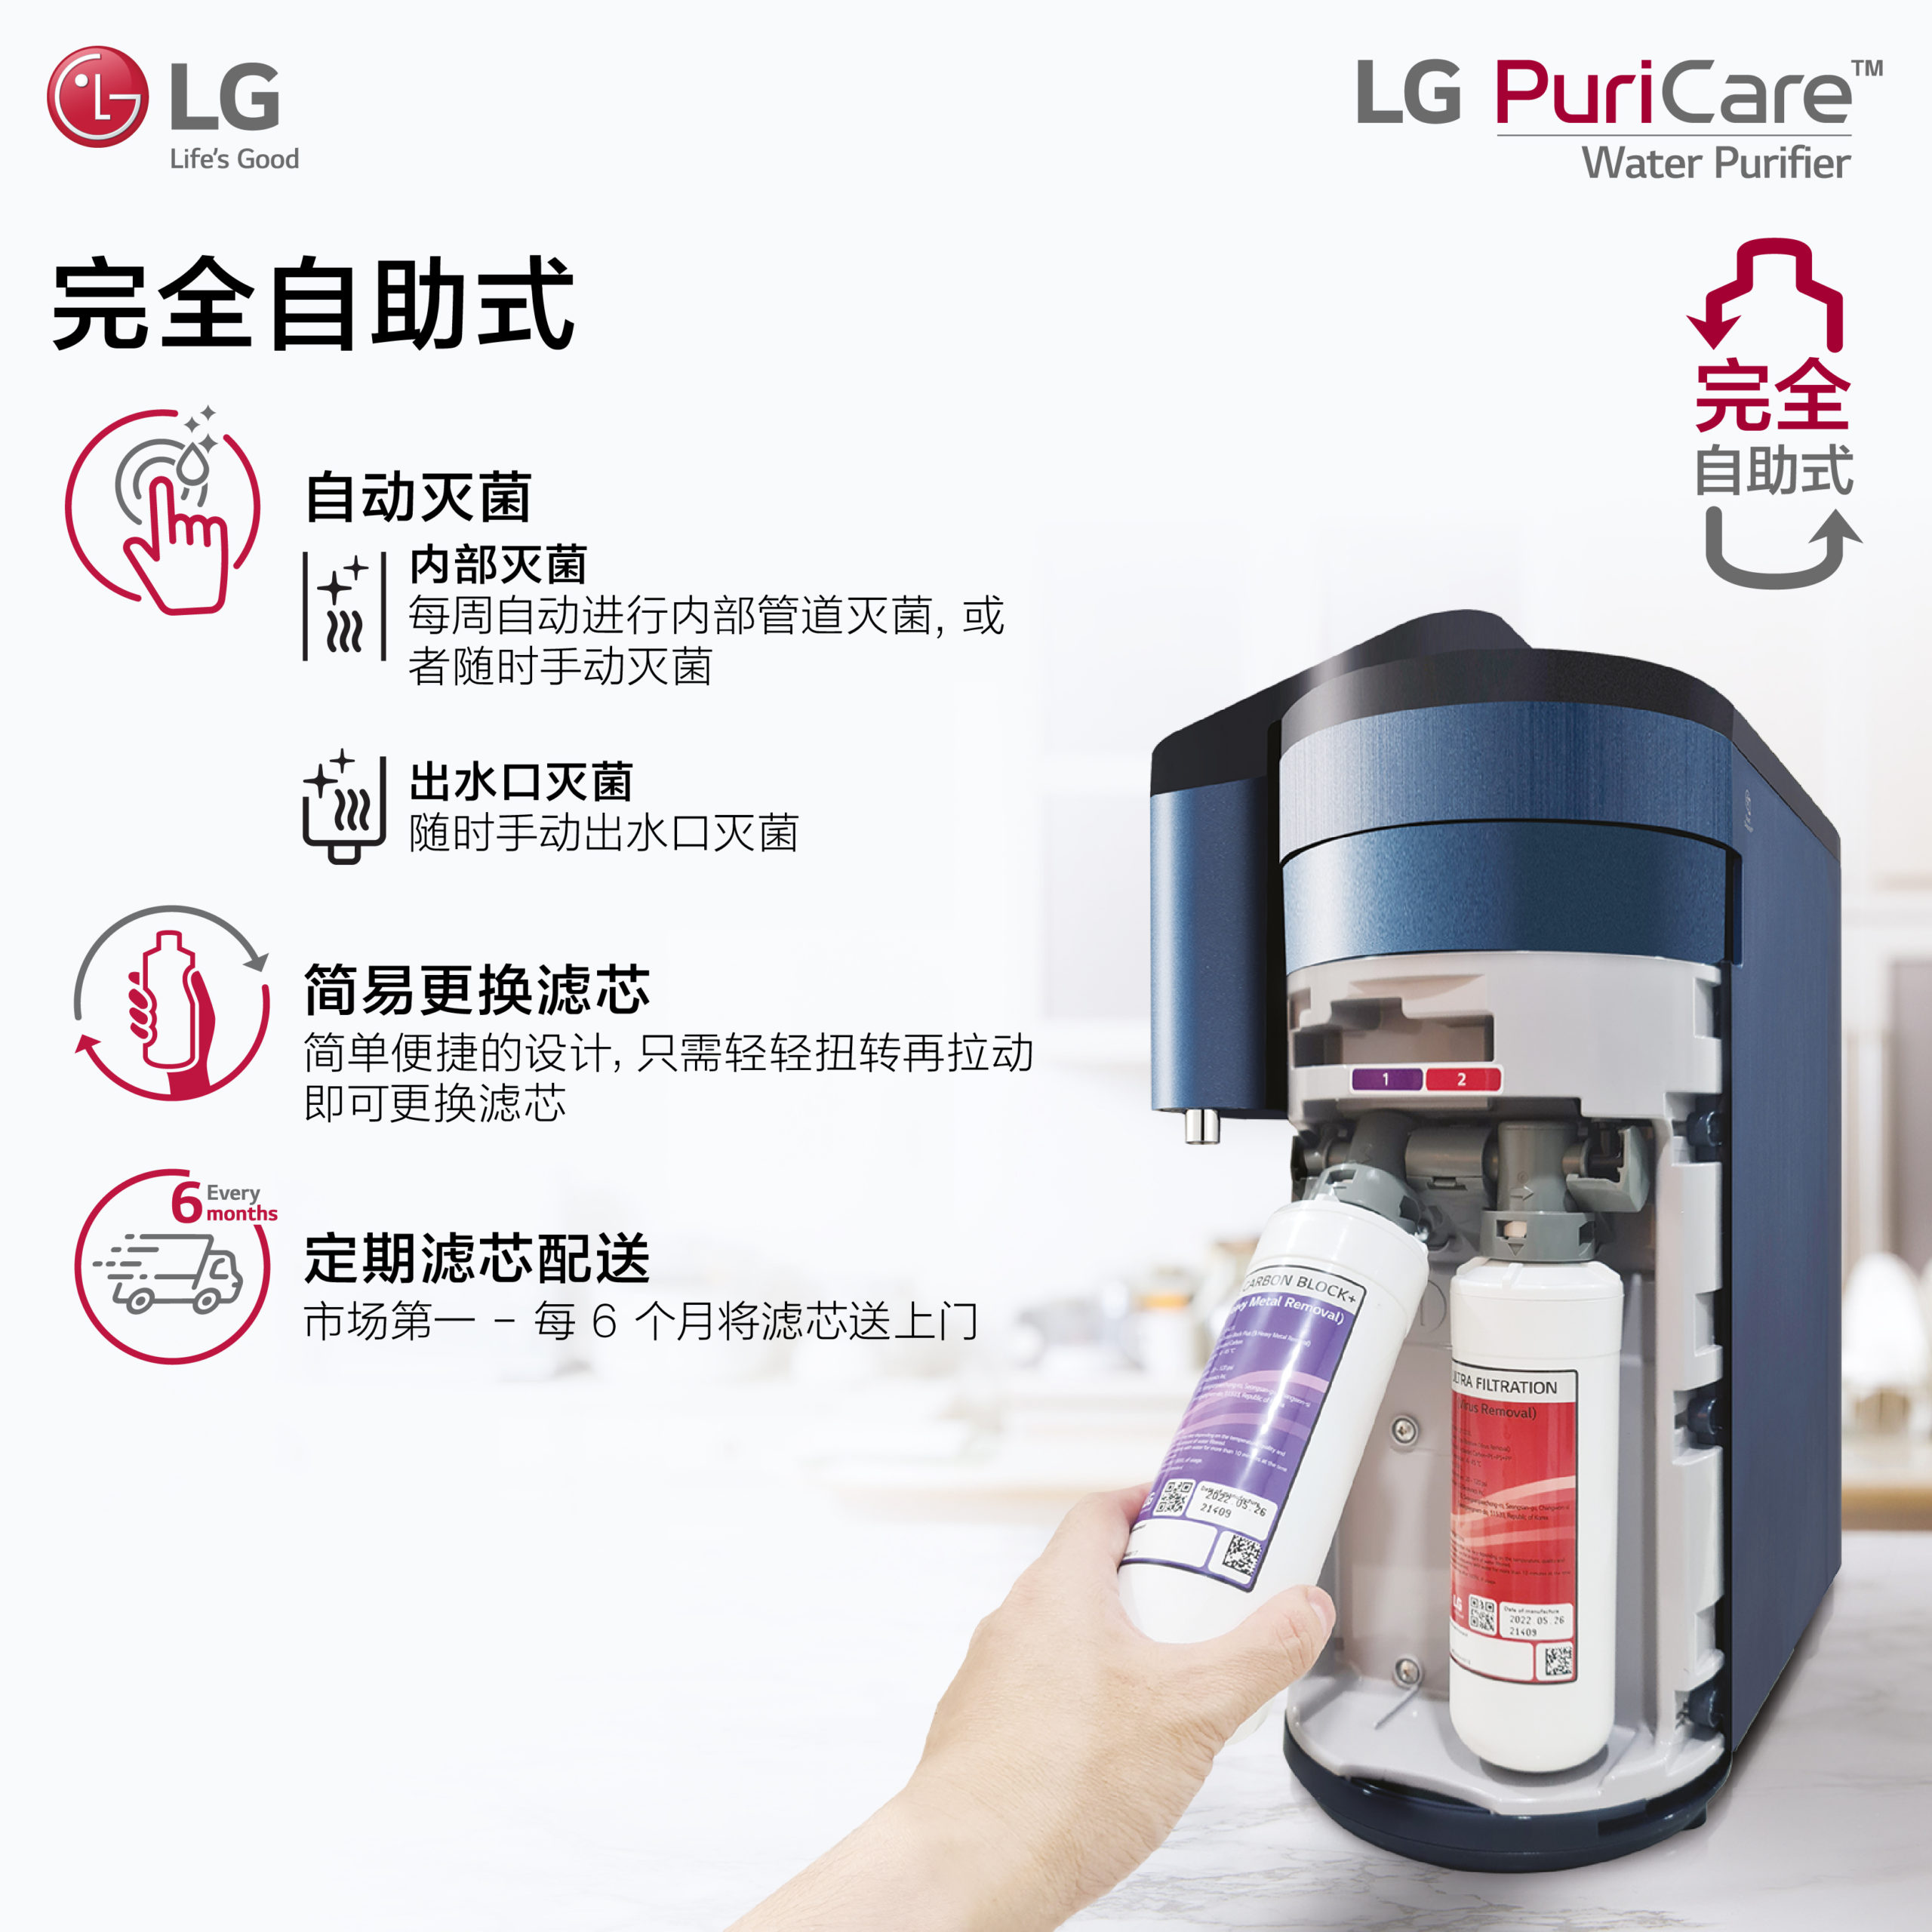 全新LG PuriCare™自助式无水箱净水机正式登陆大马 23